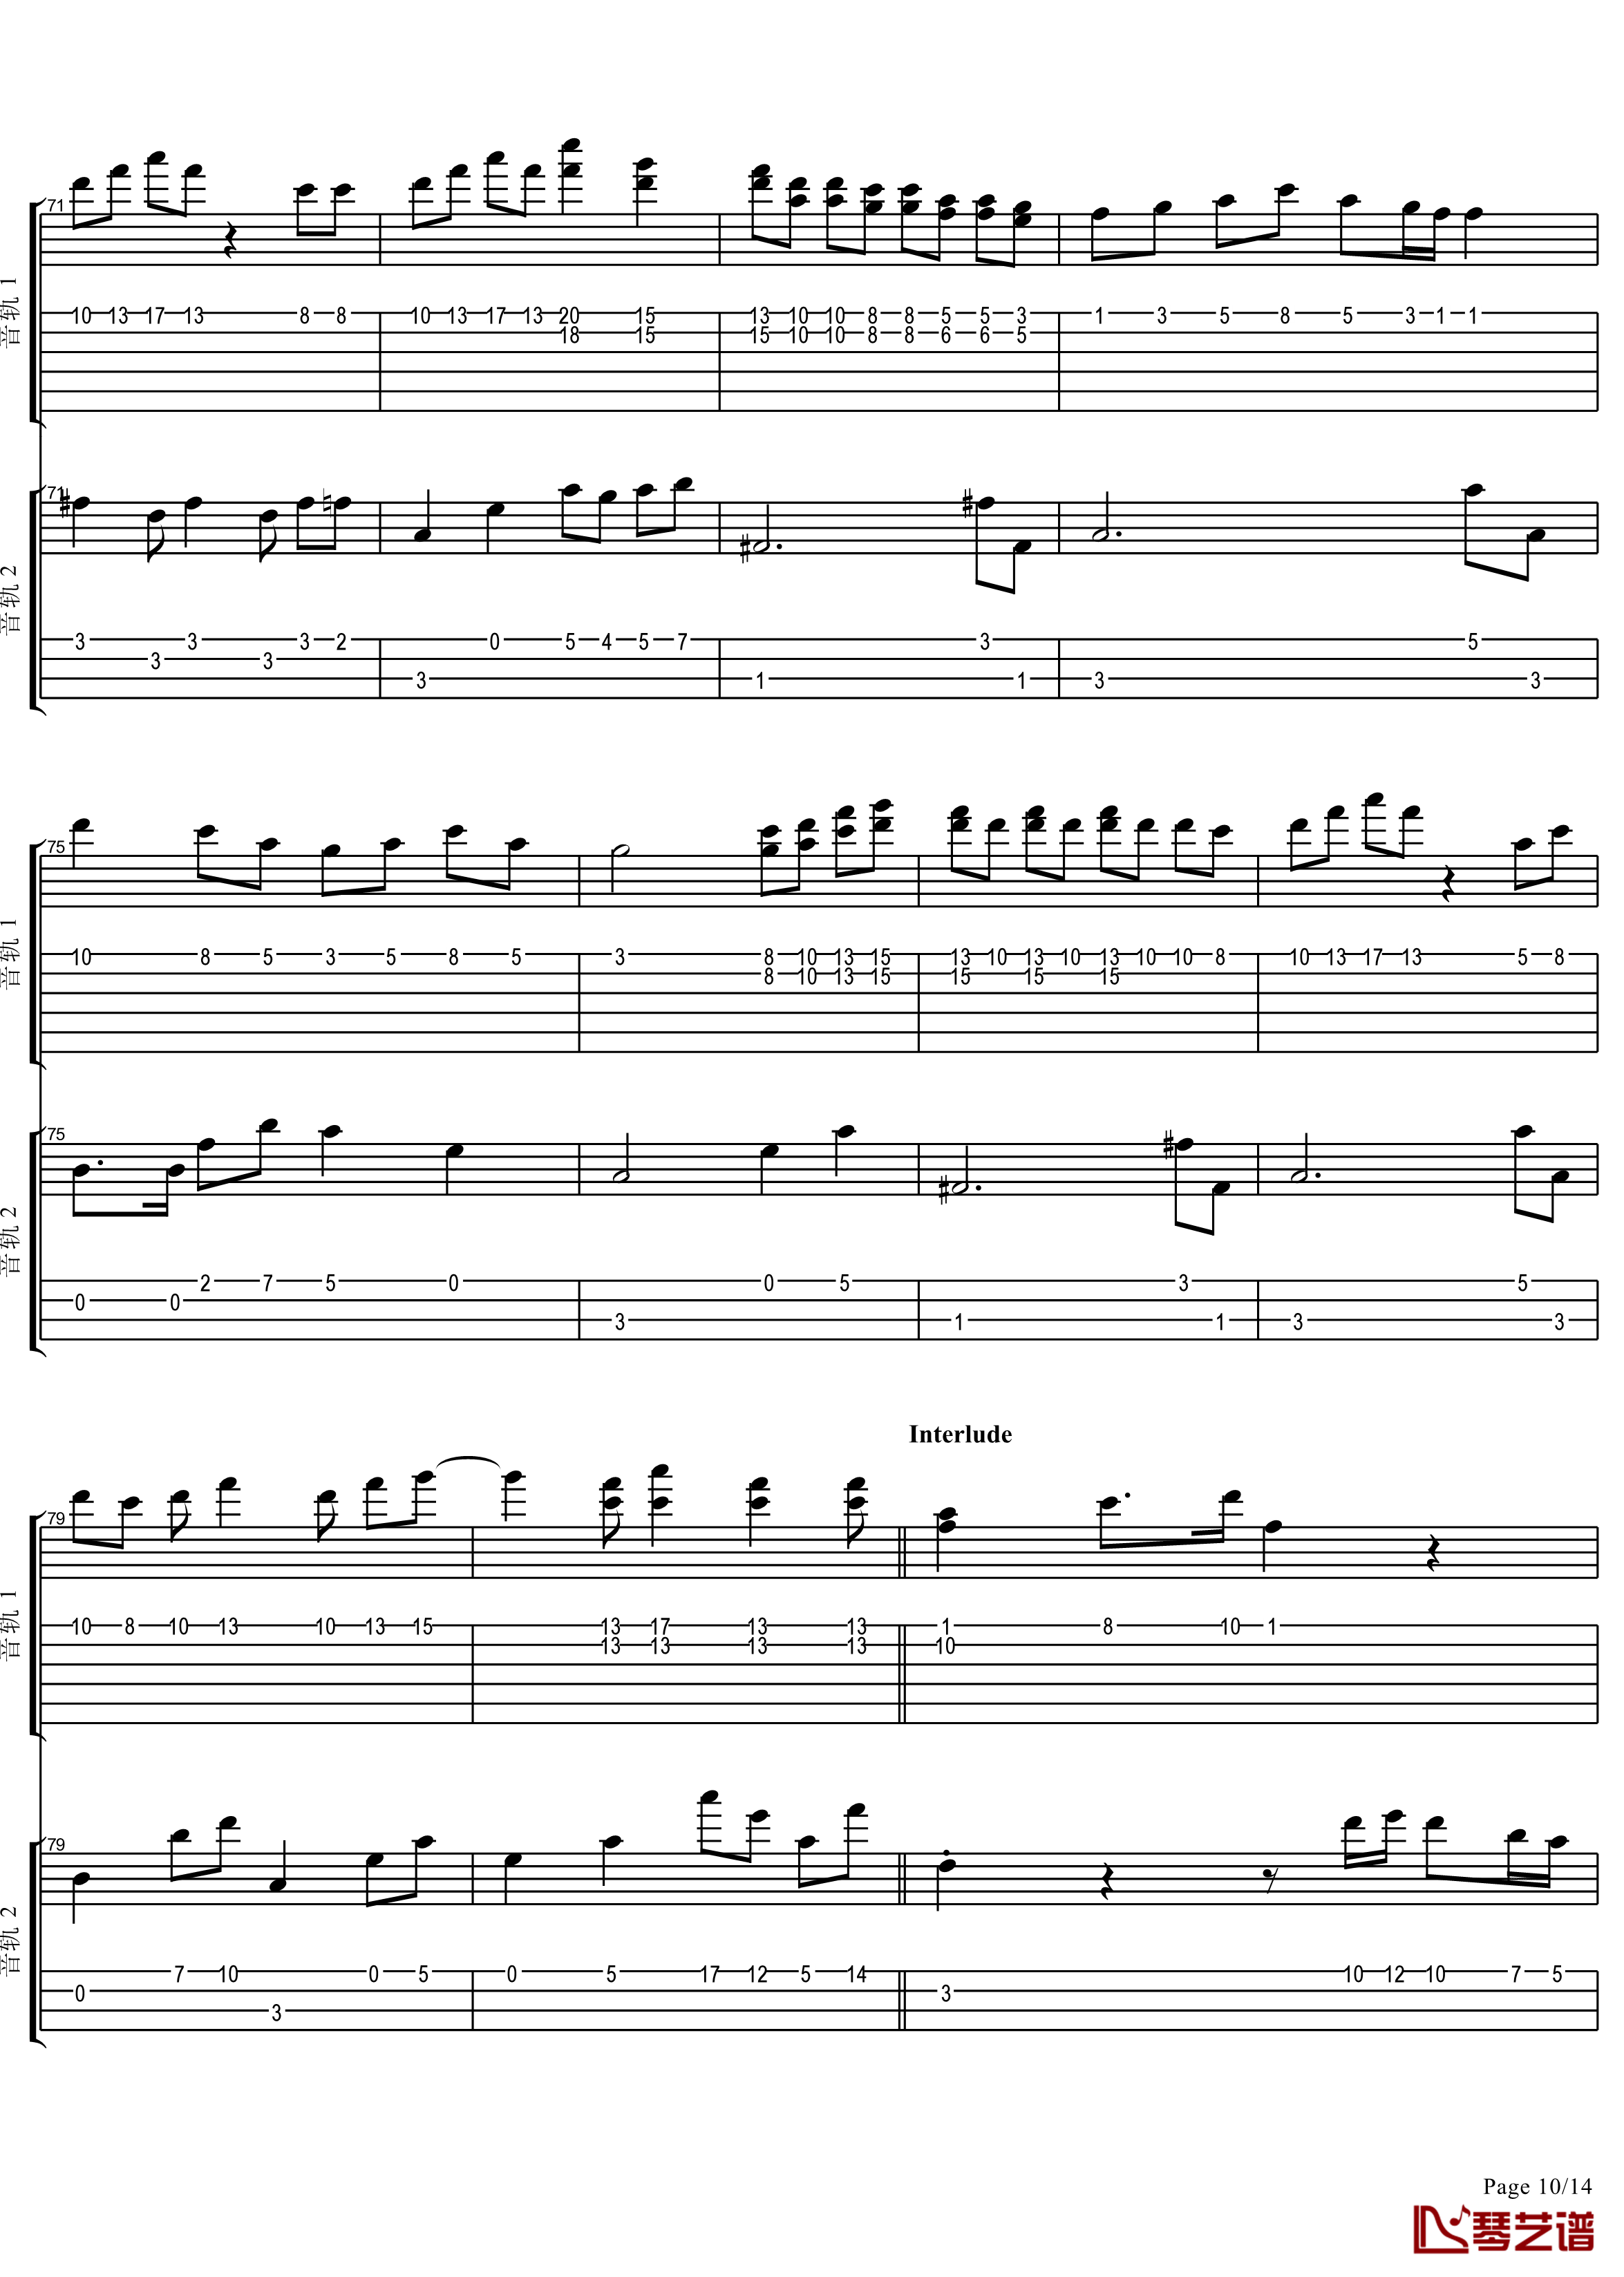 十八般武艺钢琴谱-完美演奏版-王力宏10